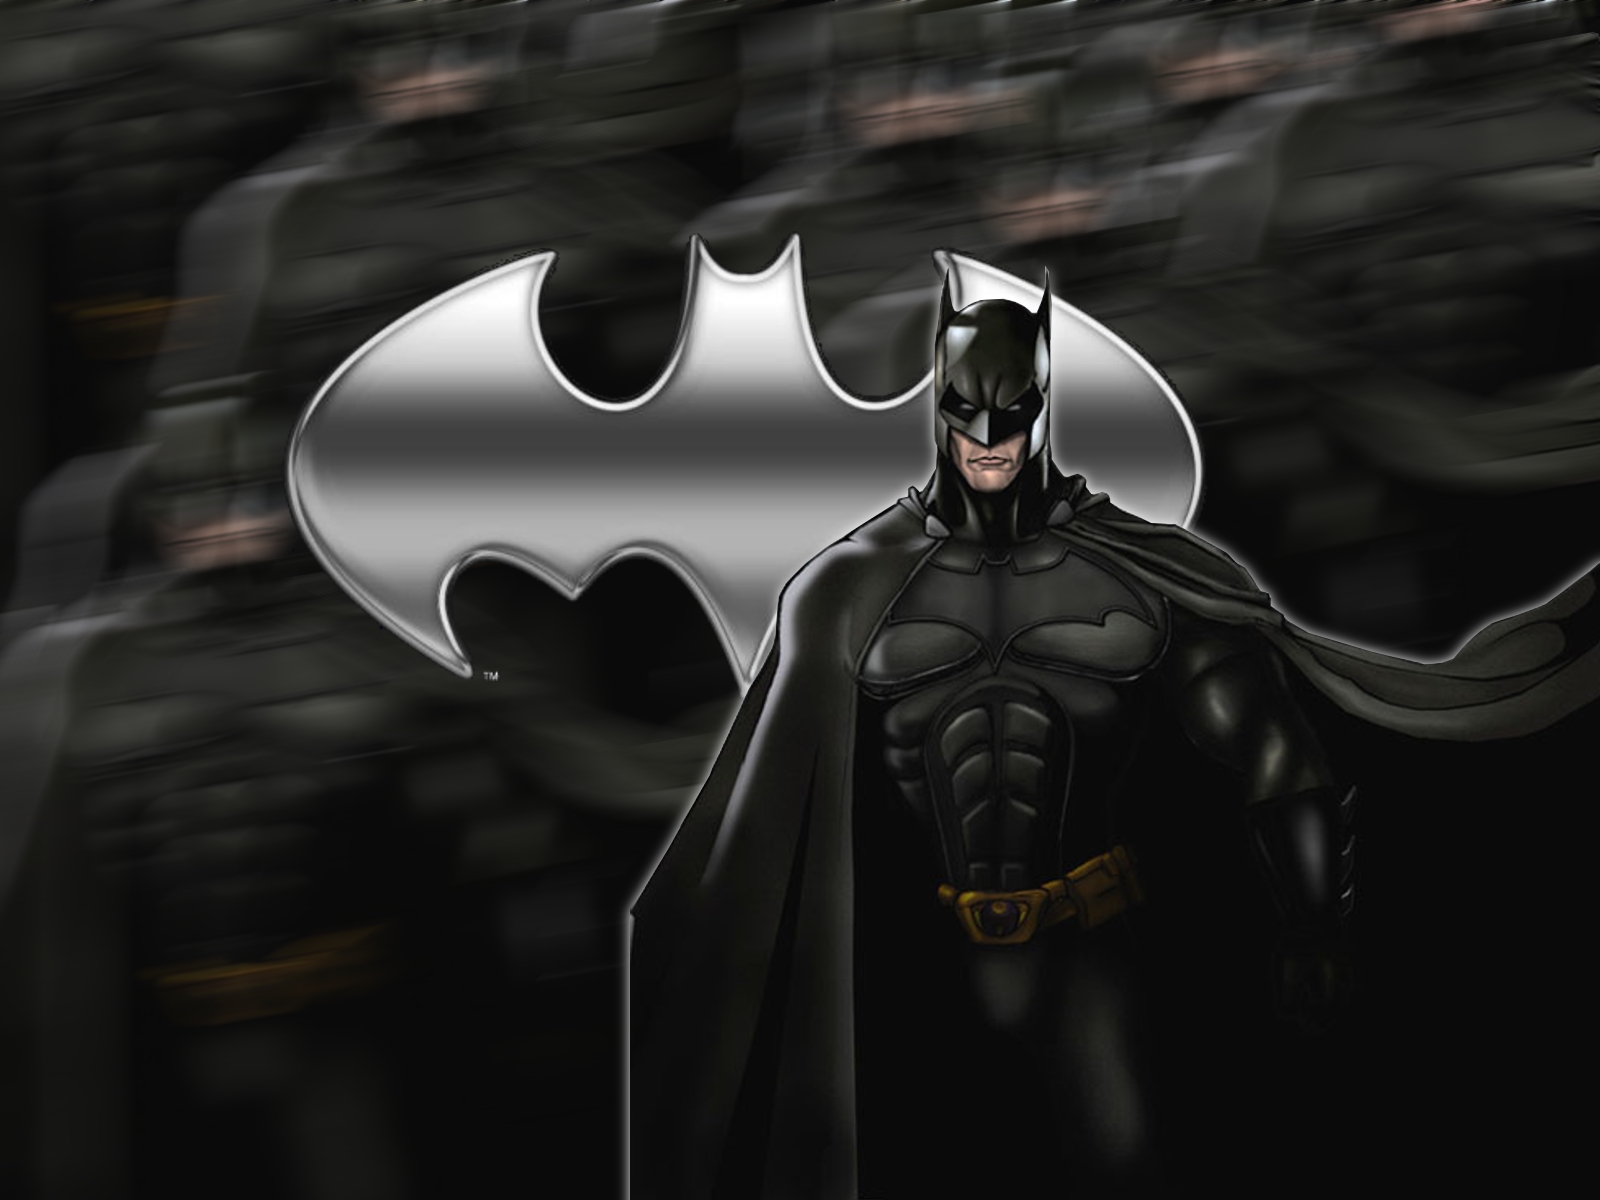 Batman Wallpaper by tennsoccerdr on DeviantArt